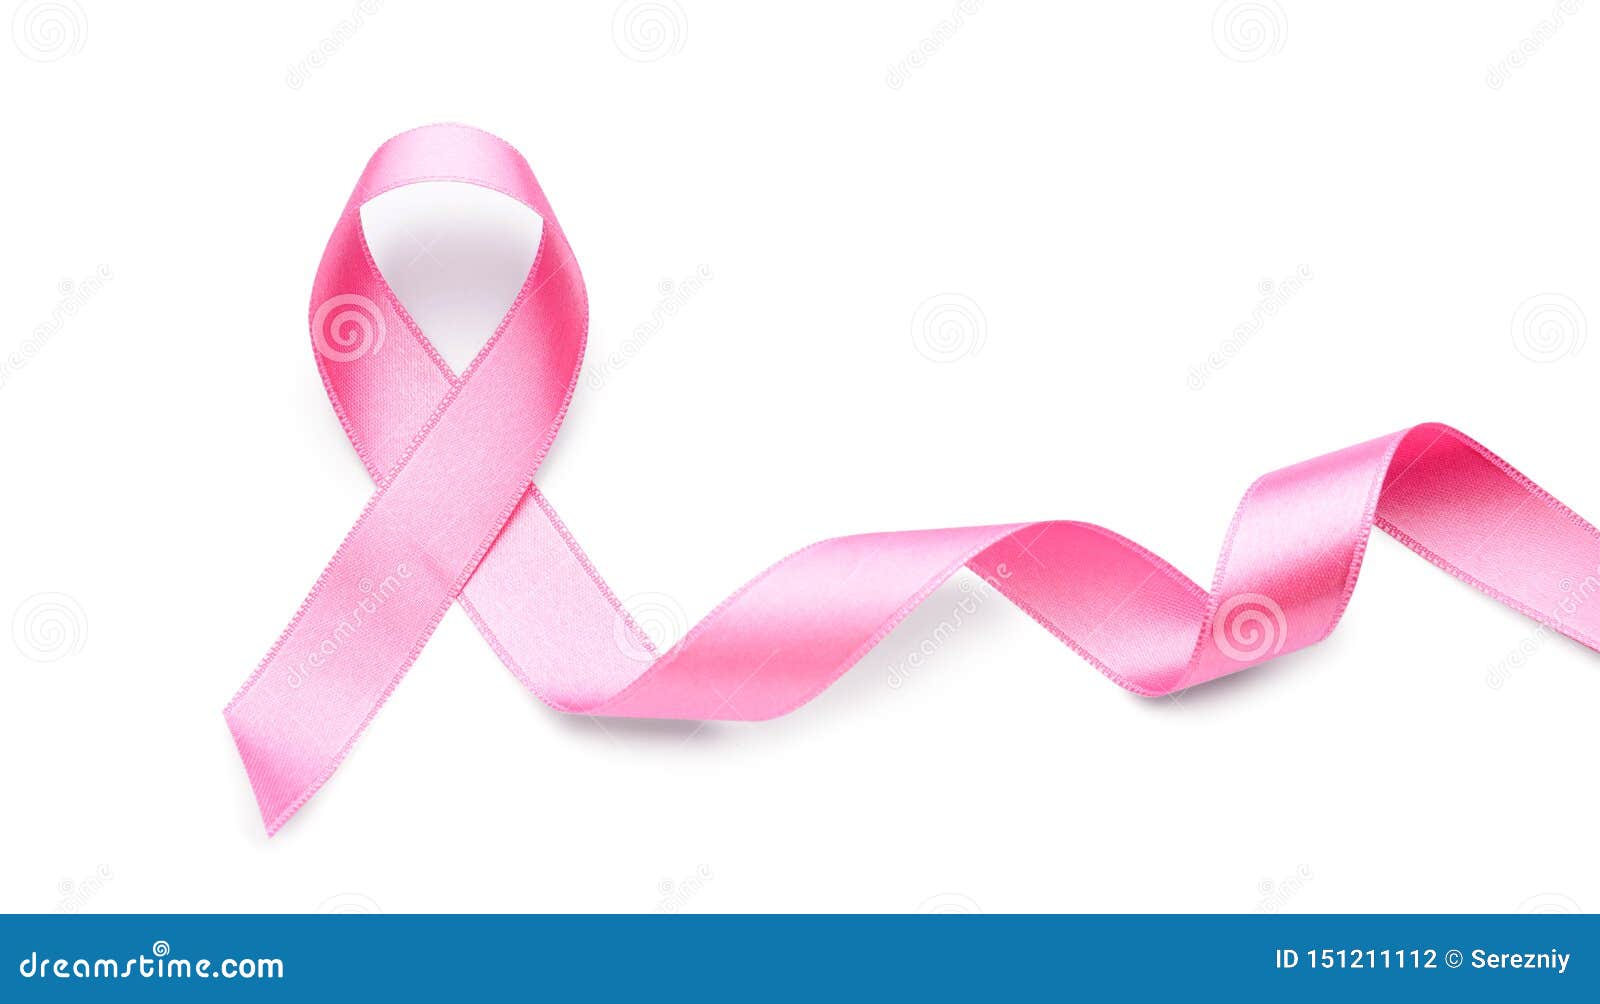 Chào mừng bạn đến với một hình ảnh đầy tính nghệ thuật và ý nghĩa về ung thư vú. Hãy cùng chúng tôi khám phá sự đẹp đẽ của ánh sáng và màu sắc trên bức tranh này, và hiểu rõ hơn về căn bệnh ung thư vú cùng những cách để phòng ngừa và chữa trị hiệu quả.